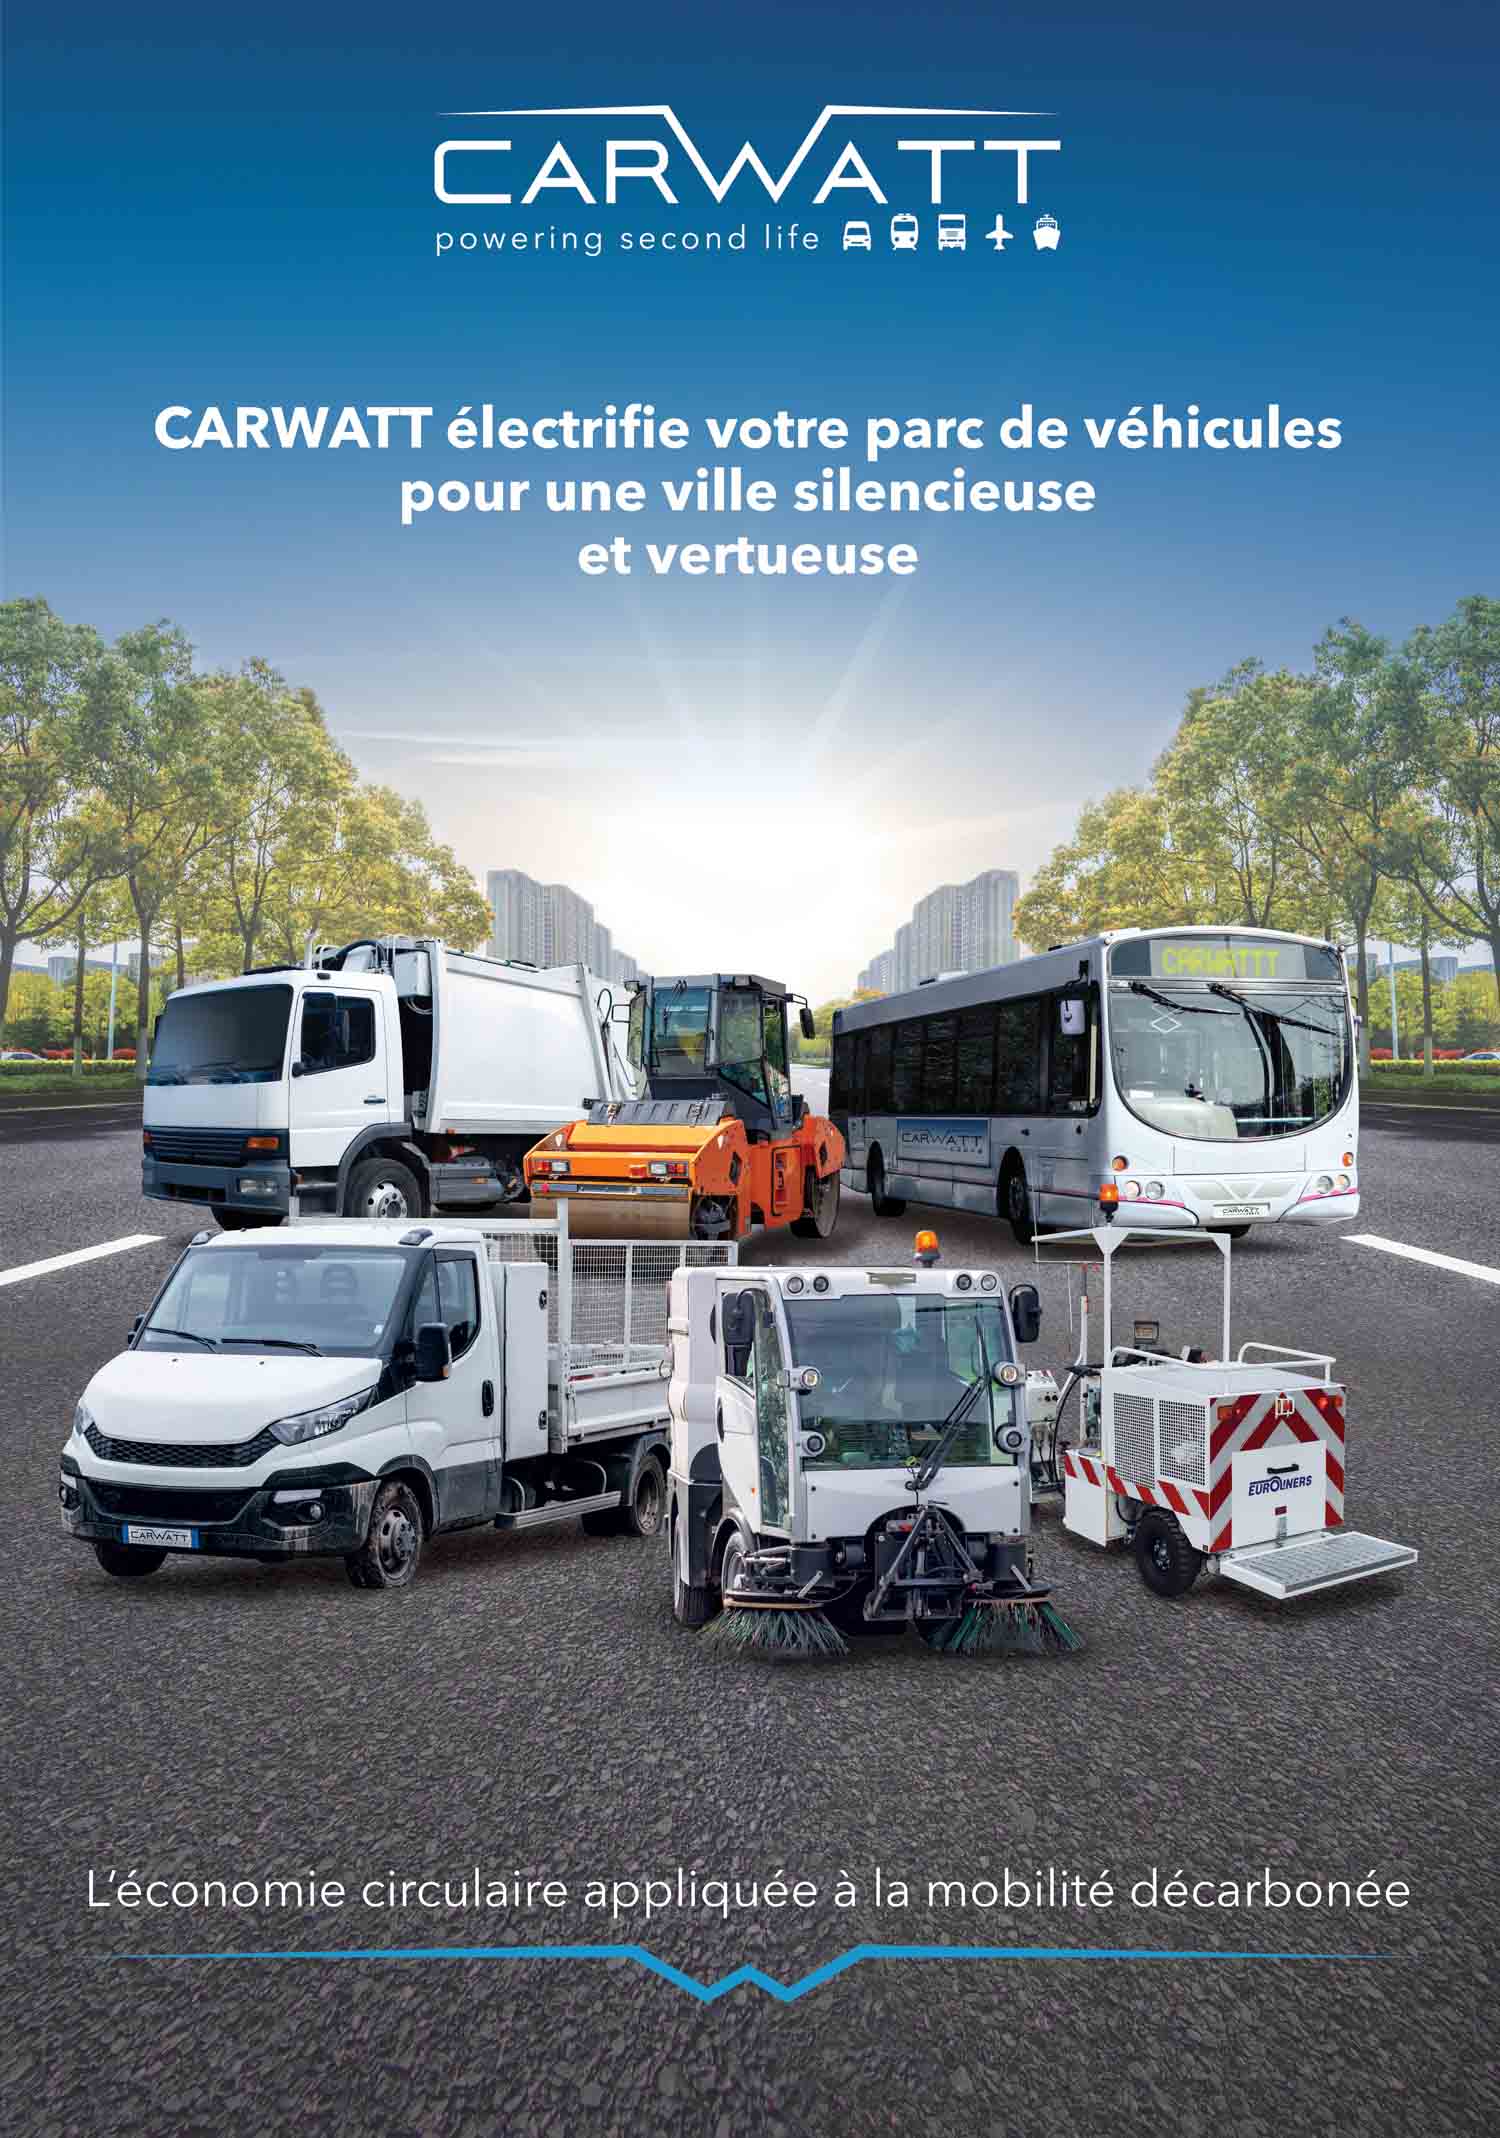 CARWATT - Transformation du thermique en électrique des véhicules industriels et de transport